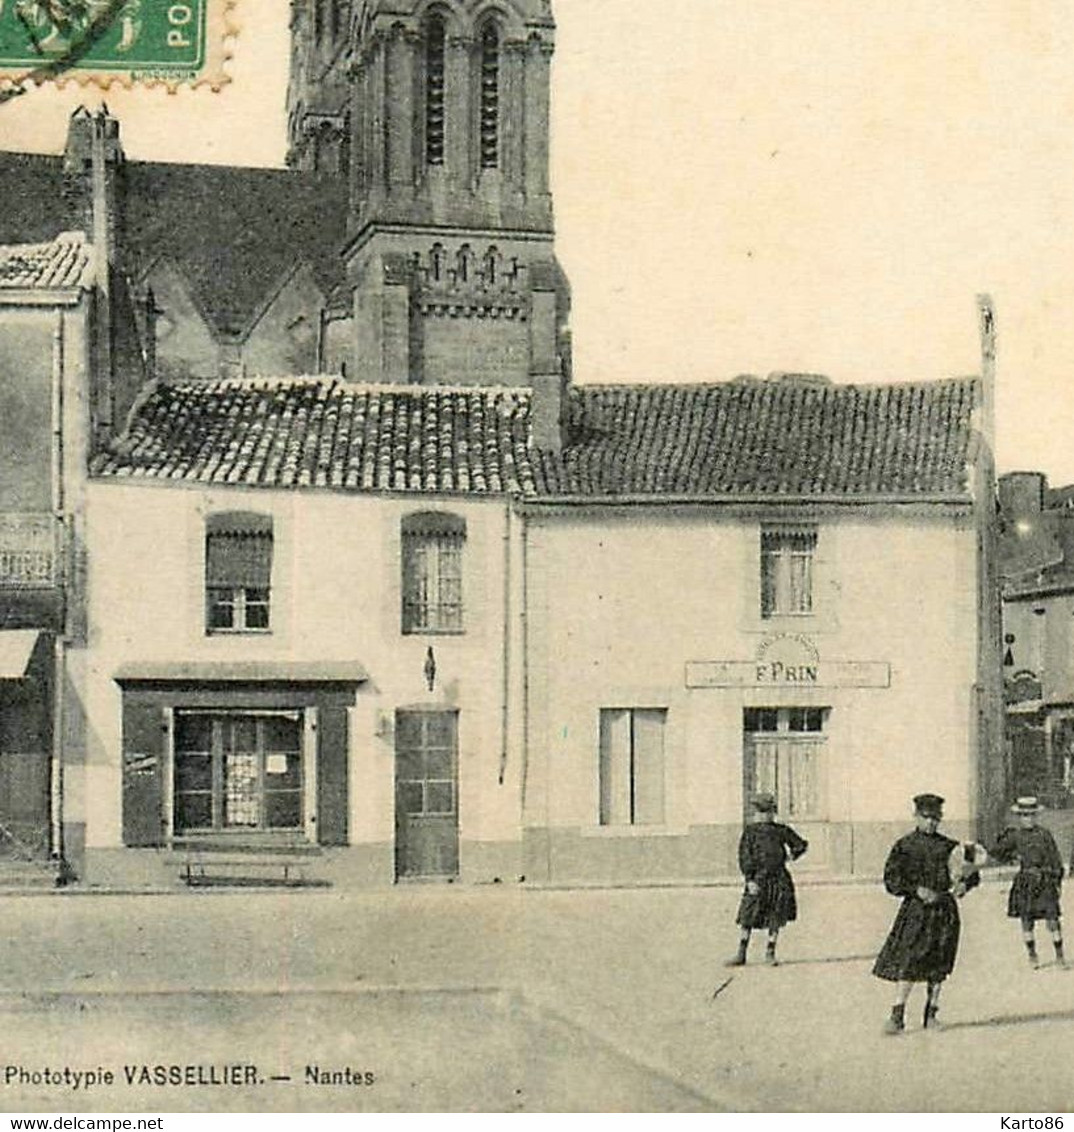 Machecoul * Débit De Tabac Tabacs , Place Du Marché Et Rue De L'église * Commerce F. PRIN * Café Du Centre - Machecoul